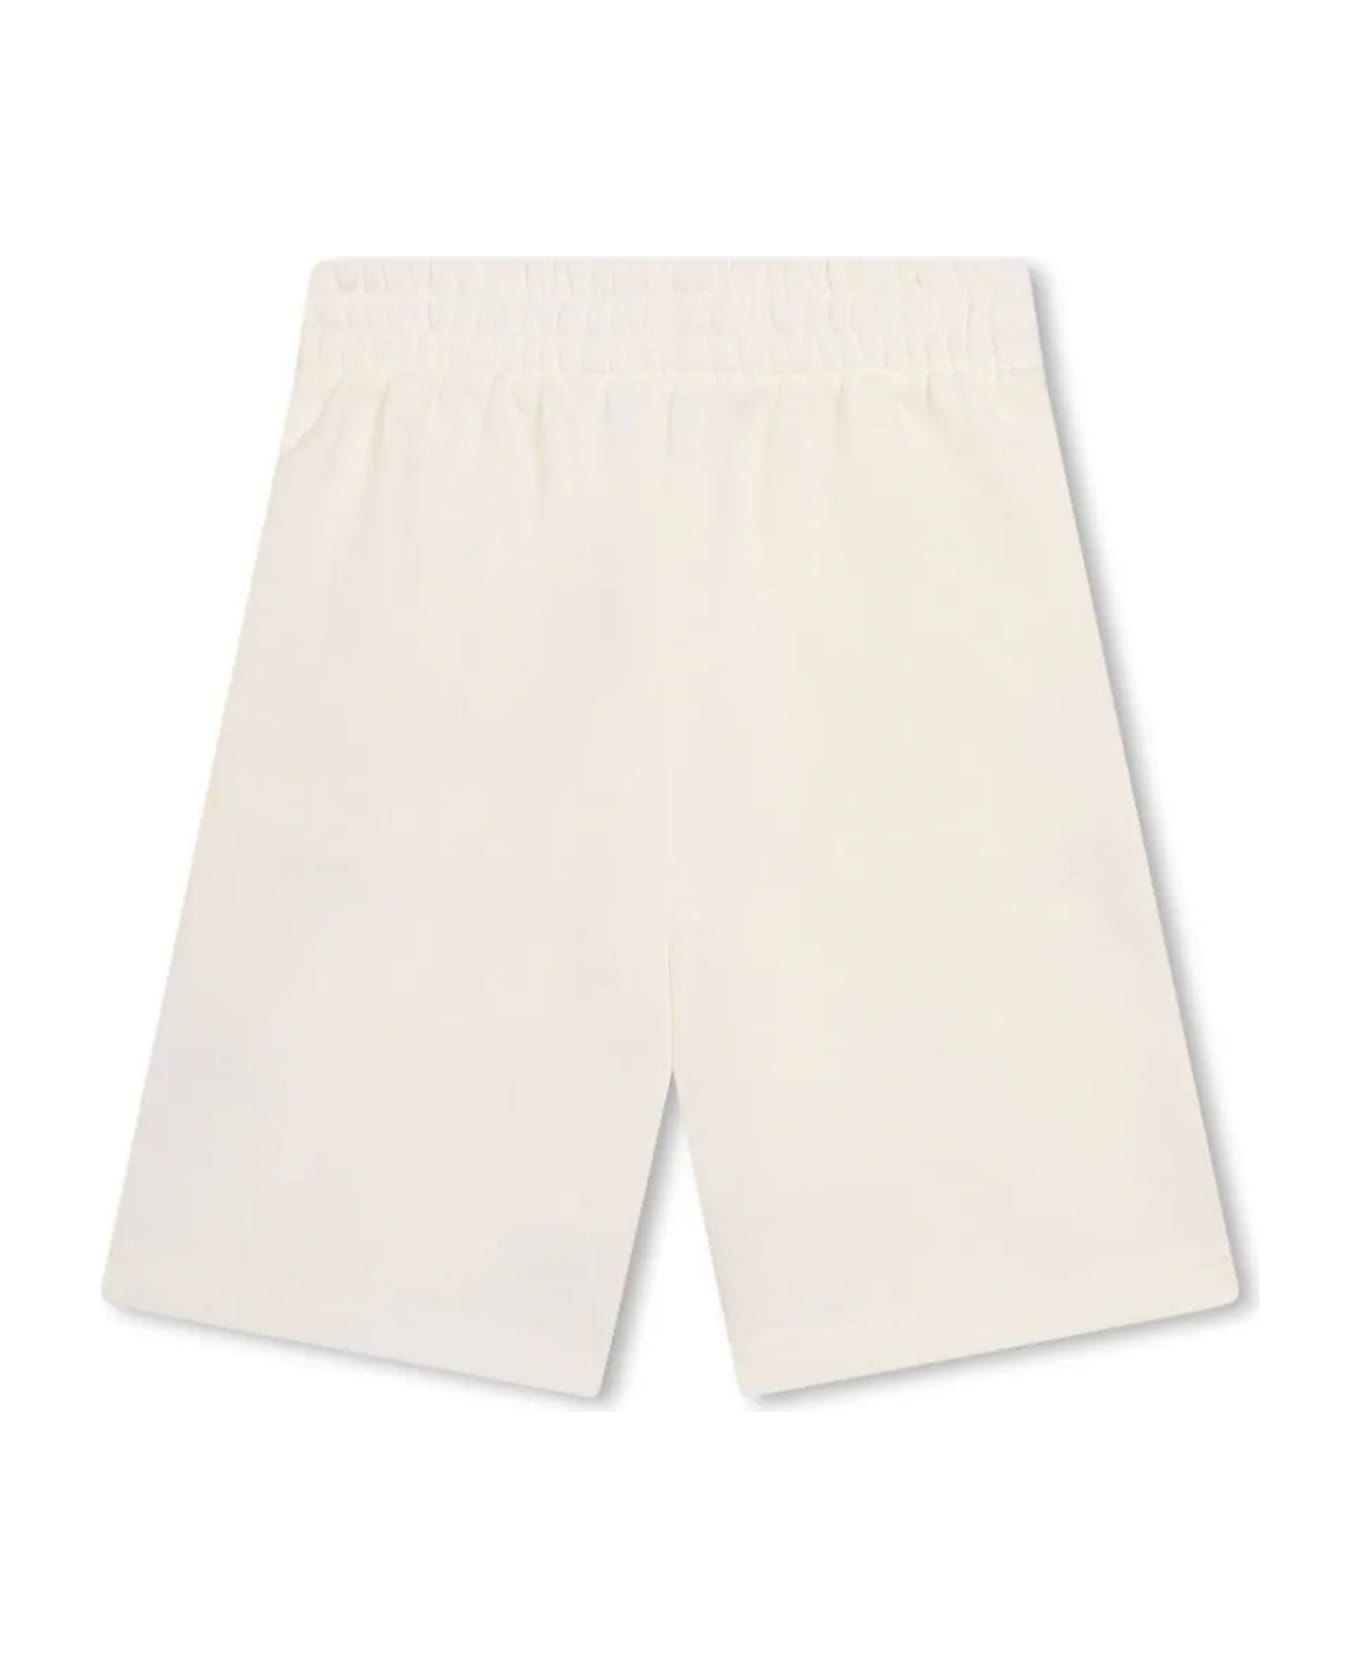 Kenzo Kids Shorts White - White ボトムス